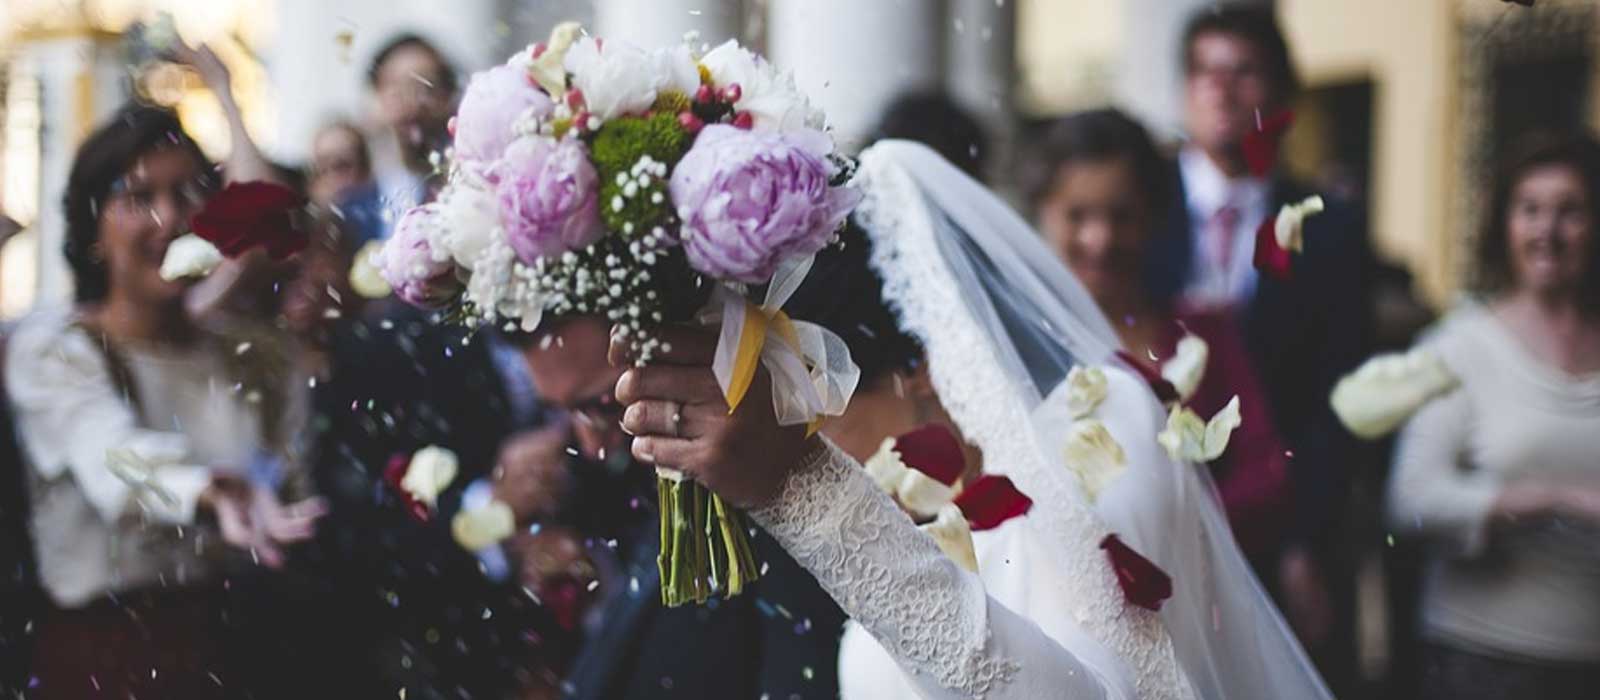 wedding-bouquet-ideas-florida-shopping-guide